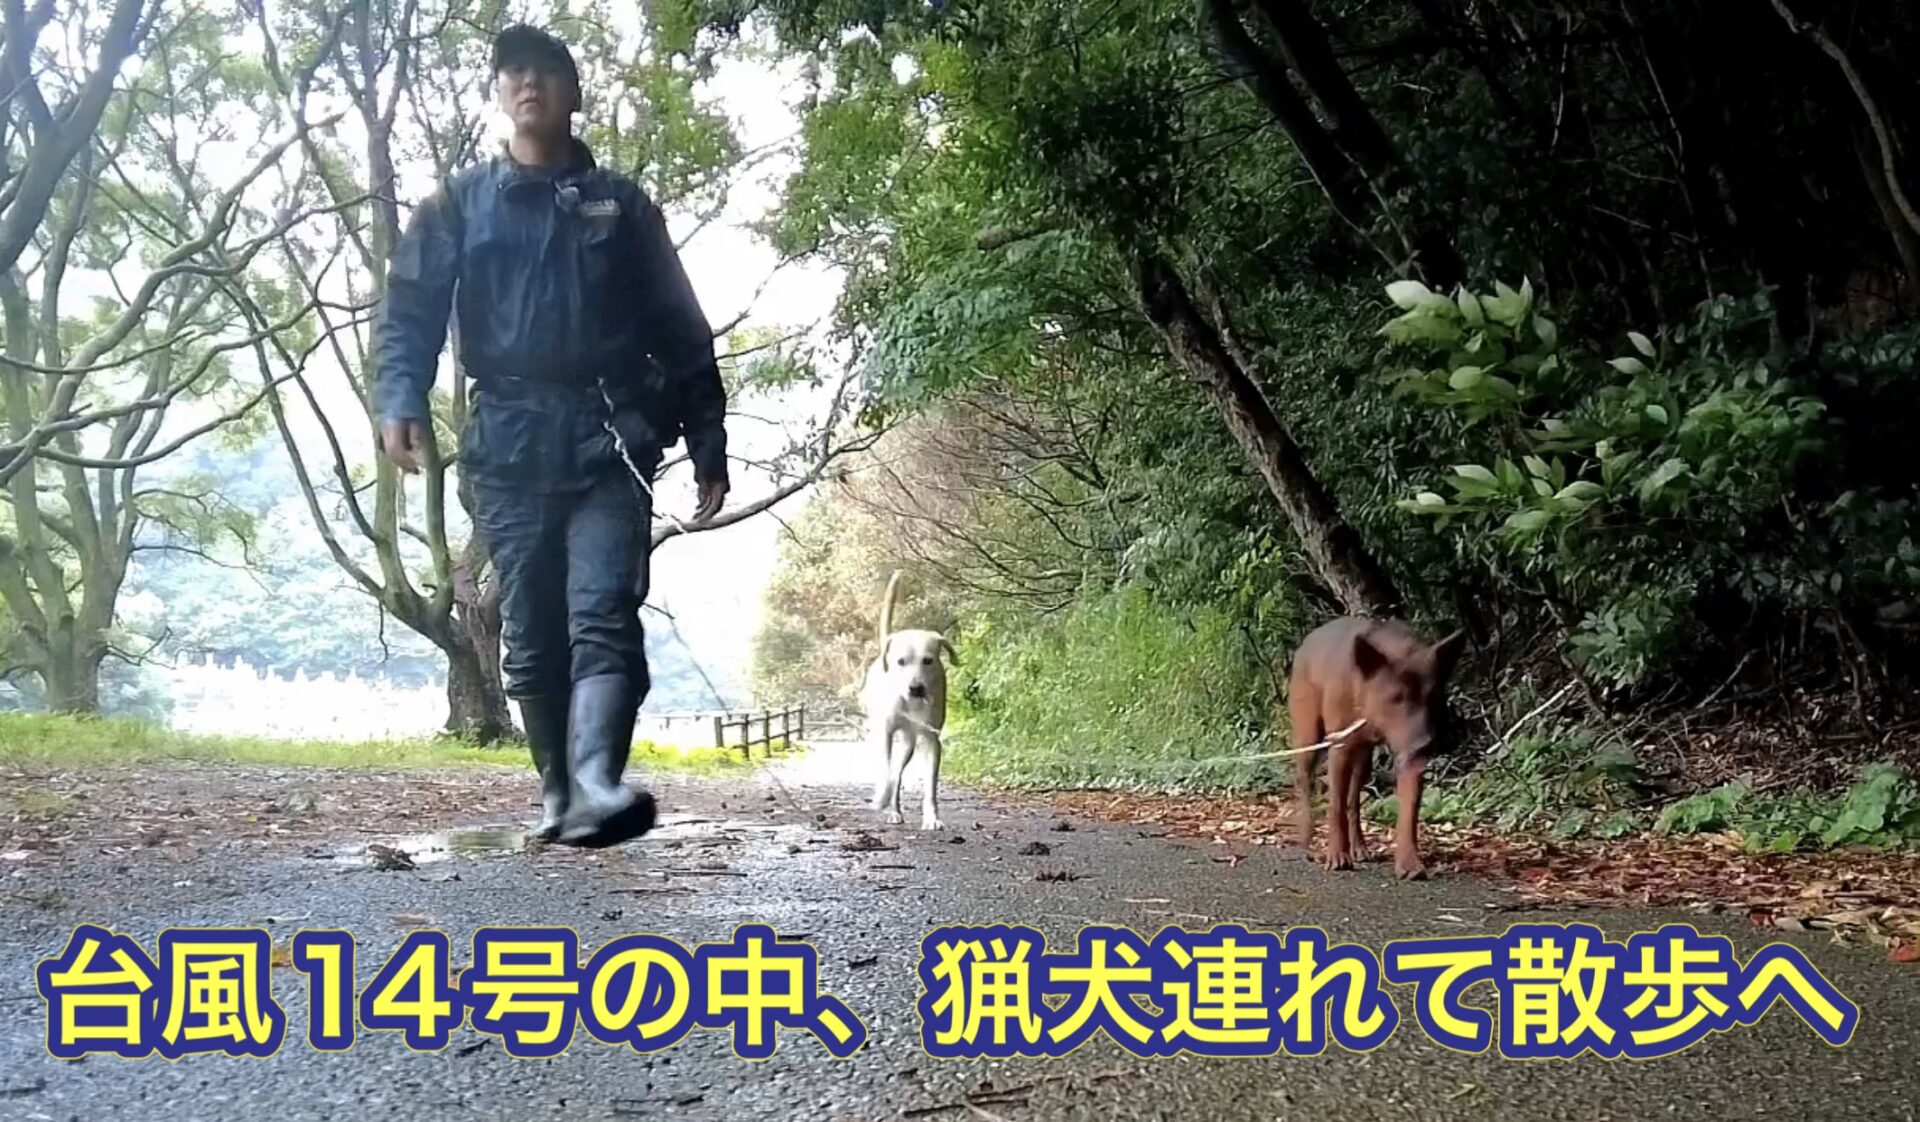 台風14号の影響で風雨が強い中、猟犬カシン、リキと散歩に行きました。